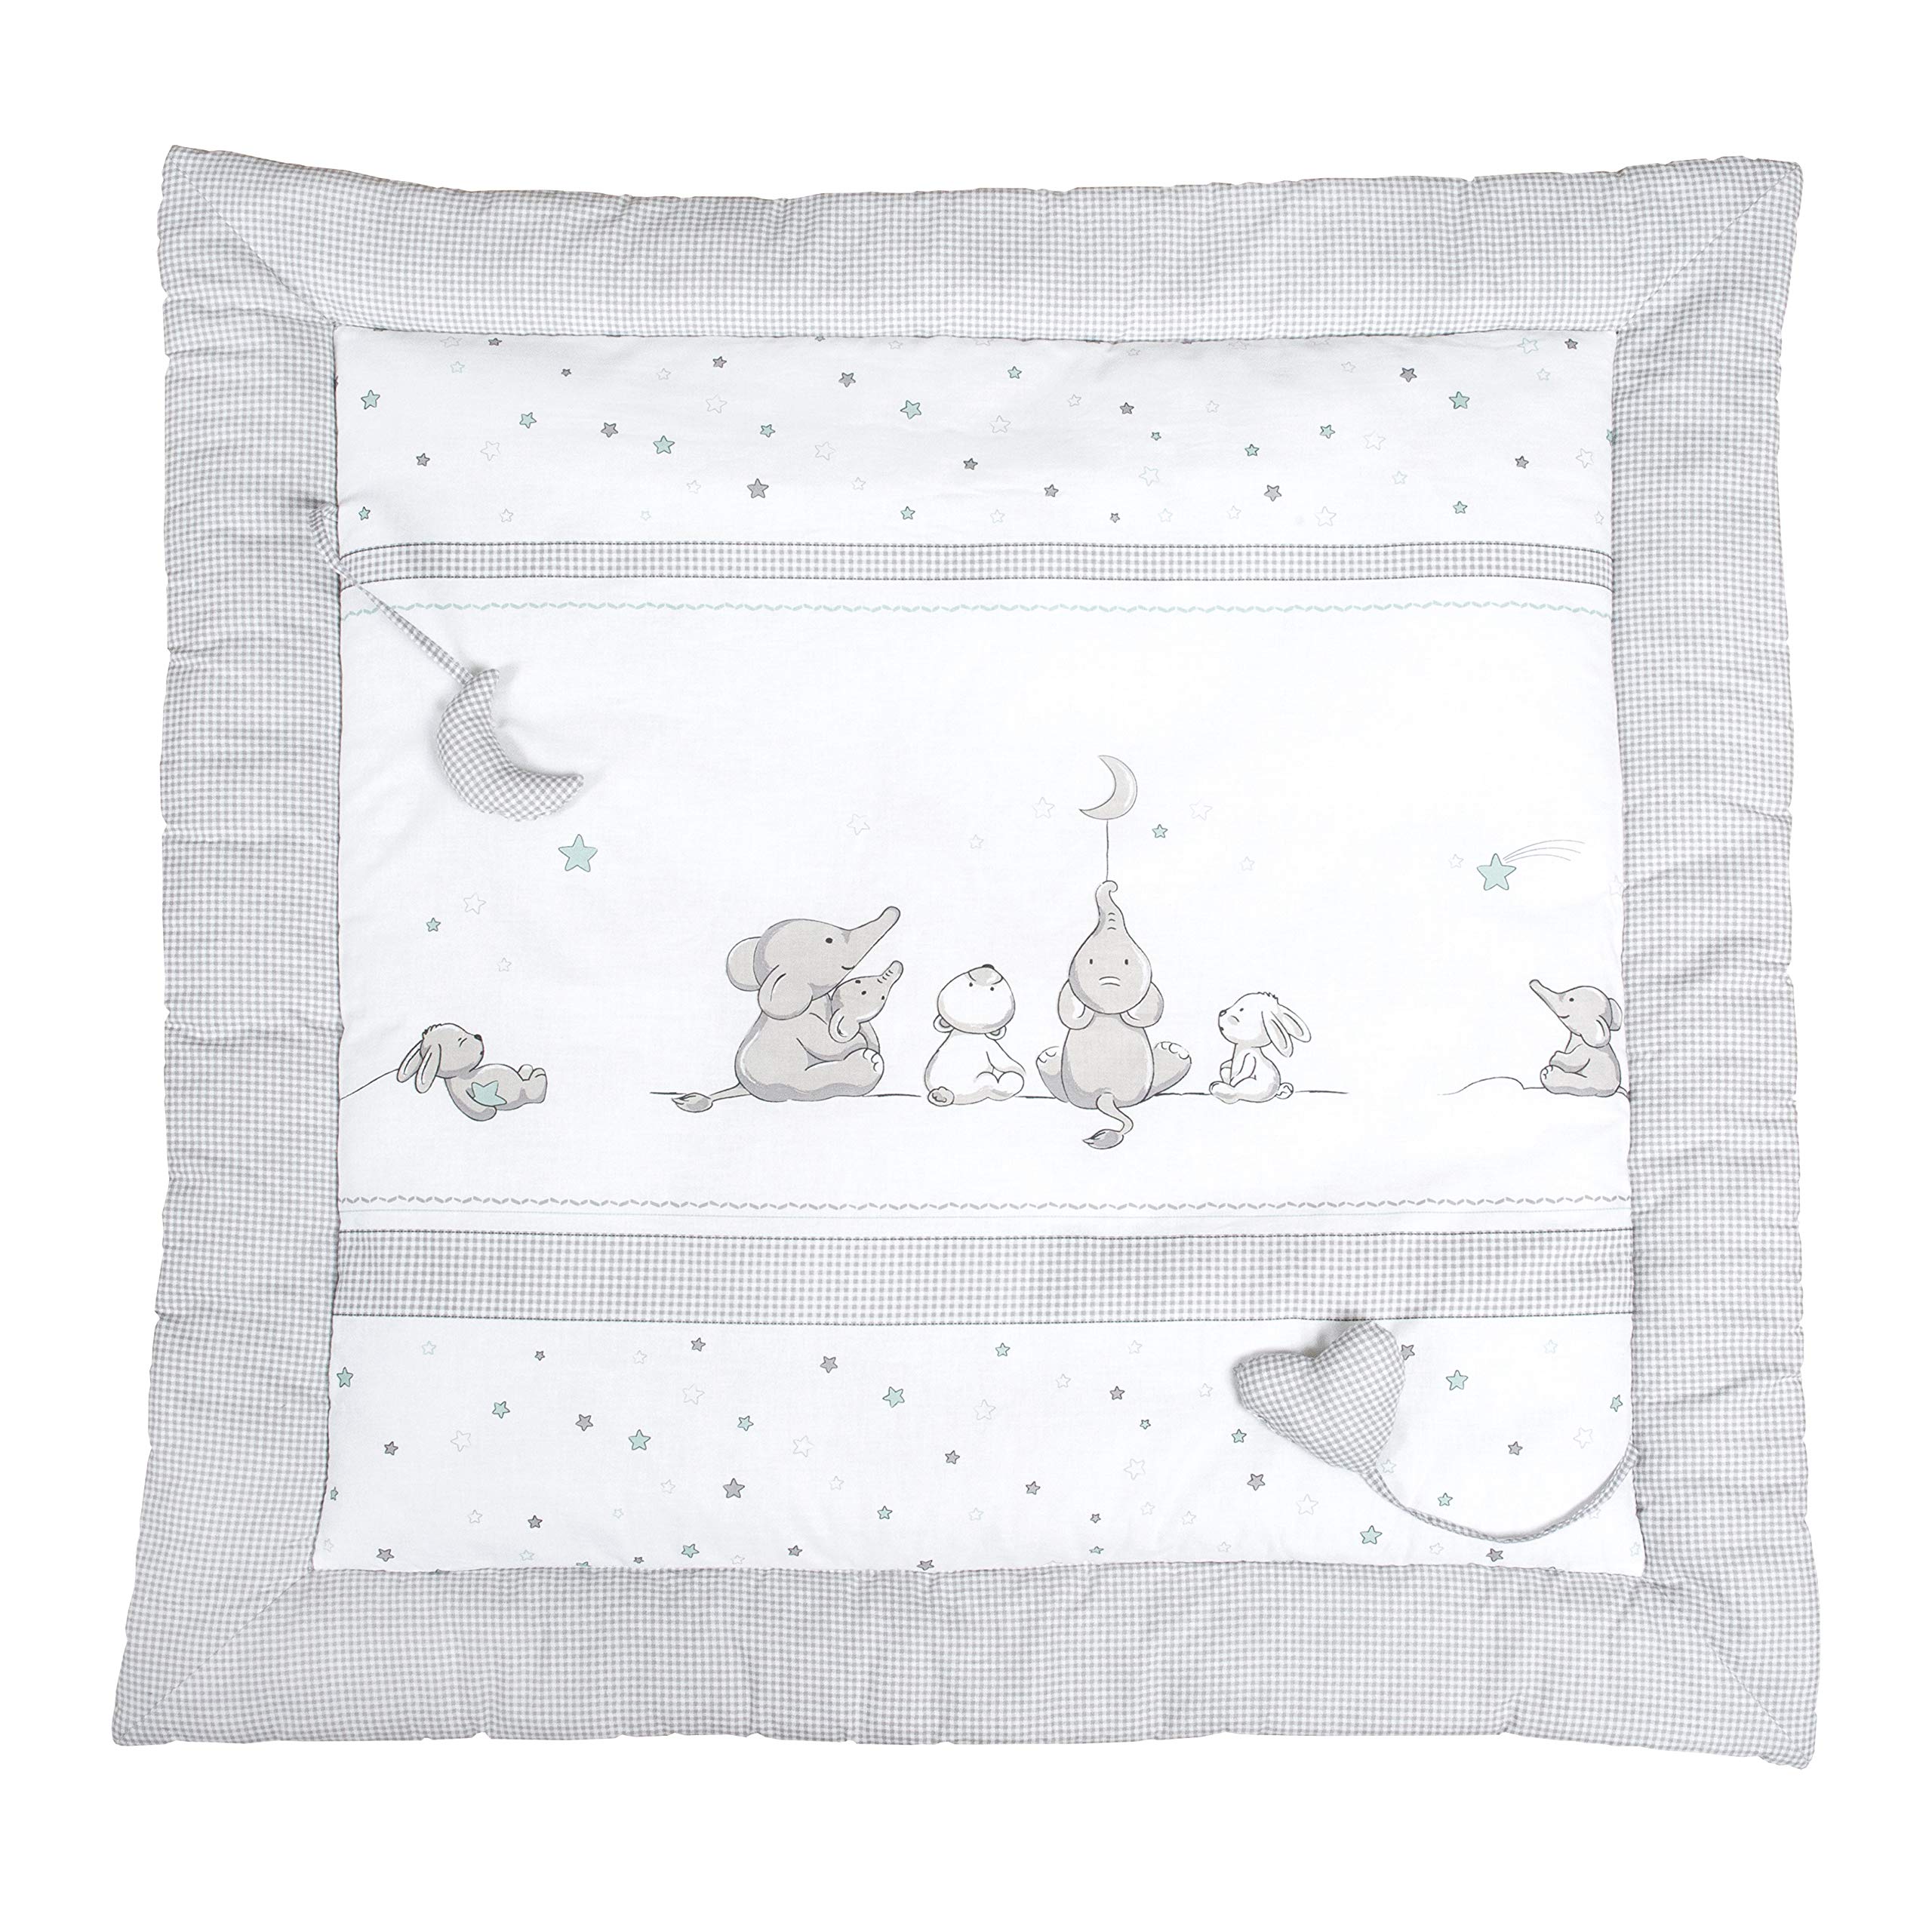 roba Baby Krabbeldecke Sternenzauber - 100 x 100 cm - Gepolsterte Spieldecke mit Stern Motiv inkl. Spielzeug Anhänger - aus weicher Baumwolle - Hellgrau / Weiß